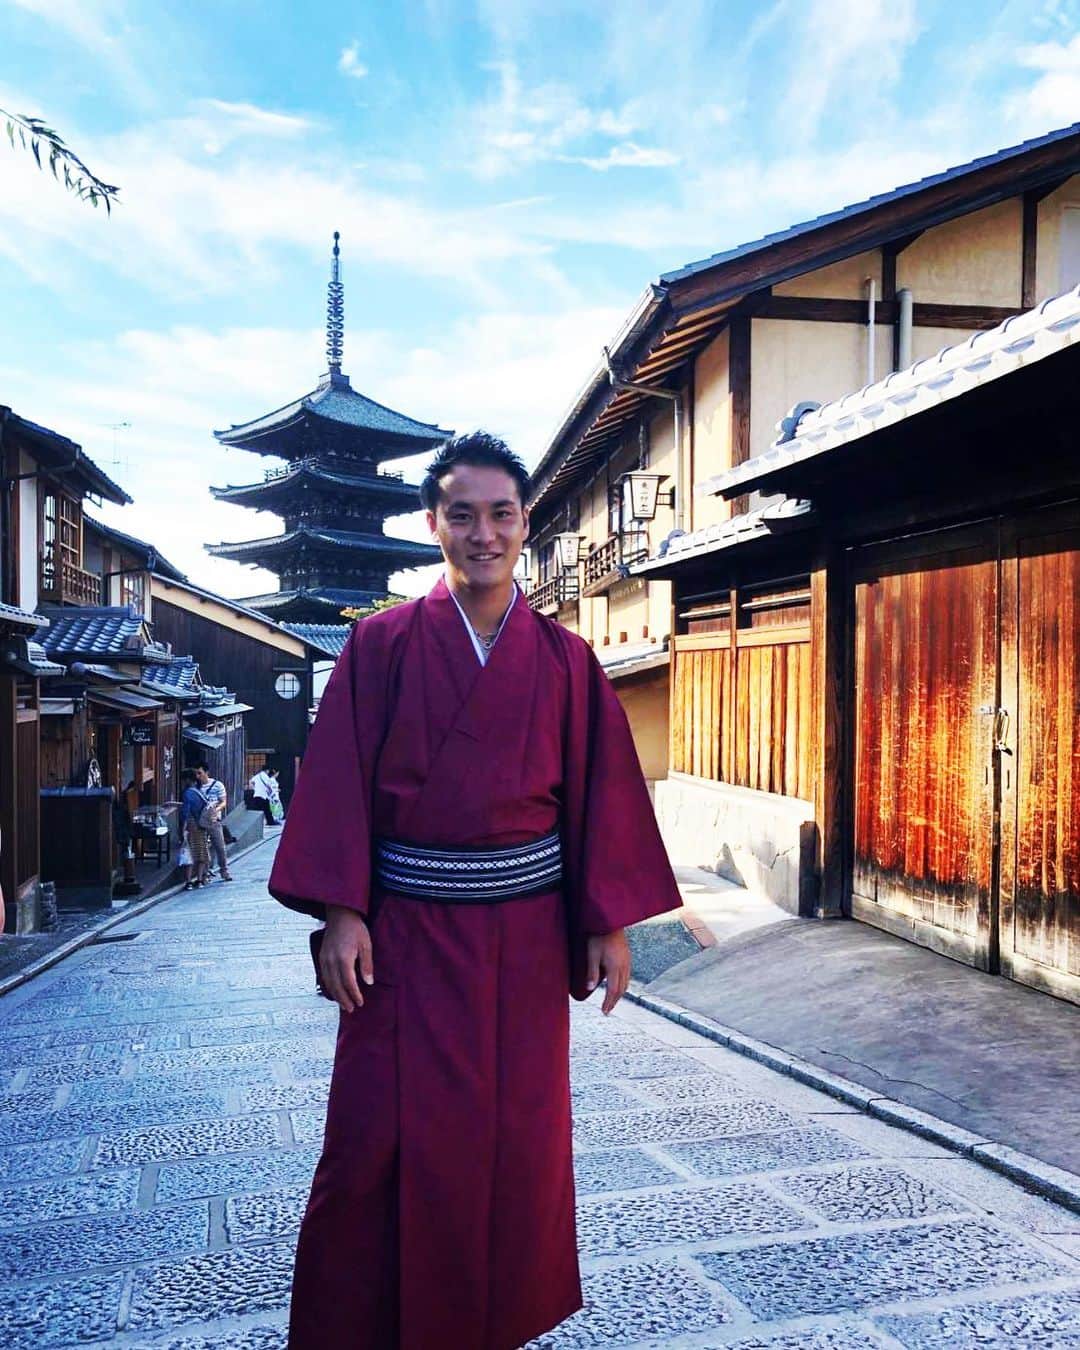 小屋松知哉のインスタグラム：「着物レンタル京小町さんに着物で撮影してもらいました！ これから秋になり紅葉の季節。 着物で京都の街並みを歩くのは最高だと思います。  人生初の着物ということで新鮮でした！ 似合ってるのかわかりませんが笑 あと写真がぎこちない笑  京都に来た人はもちろん、京都の人もぜひ着物で出かけてみてください！  #着物レンタル京小町 #kimonorentalkyokomachi #kyoto  #kyotokimono  #japantravel #kyotokimonorental  #kyokomachi #京都着物レンタル京小町 #yukata #京小町 #浴衣 #京都和服出租京小町 #京都 #和服 #京都着物レンタル #着物體驗  #京都観光 #京都和服體驗  #和服體驗  #修学旅行 #kyototravel  #japan  #기모노렌탈  #유카타렌탈 #교토기모노렌탈  #기모노」